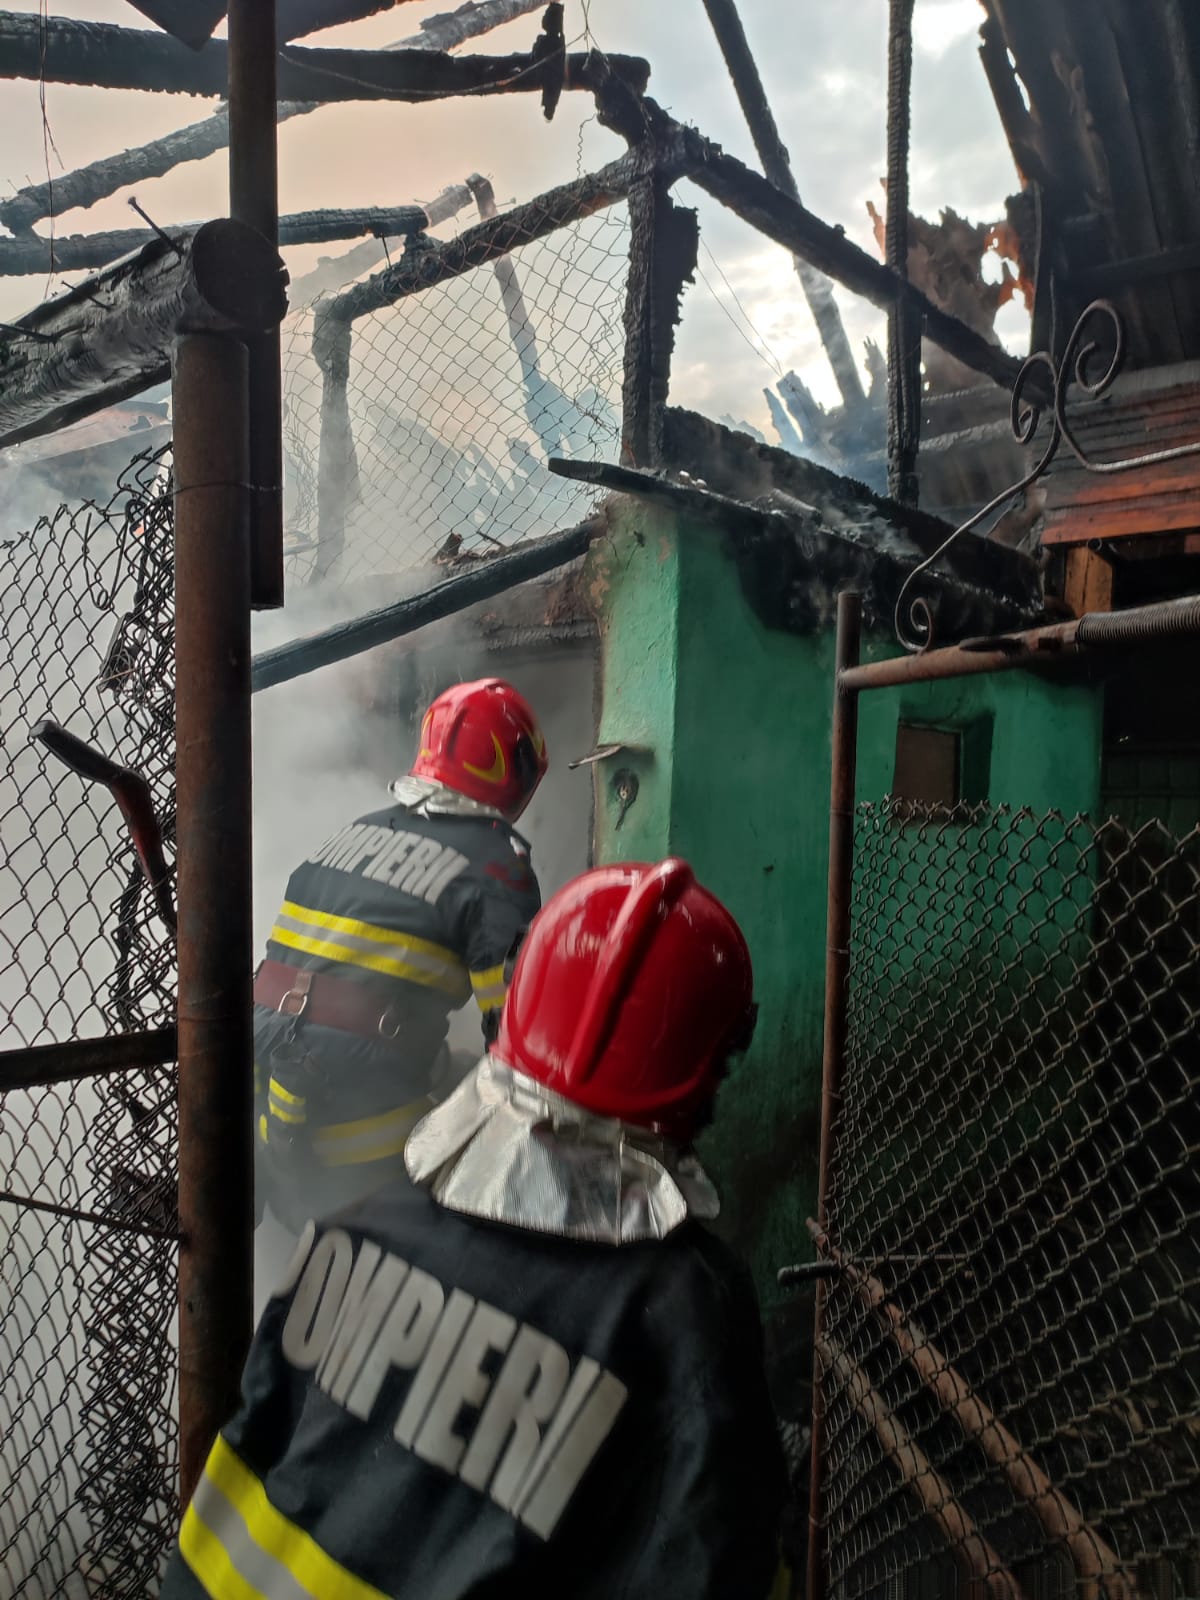 Salvatorii au stins incendiul în limitele găsite